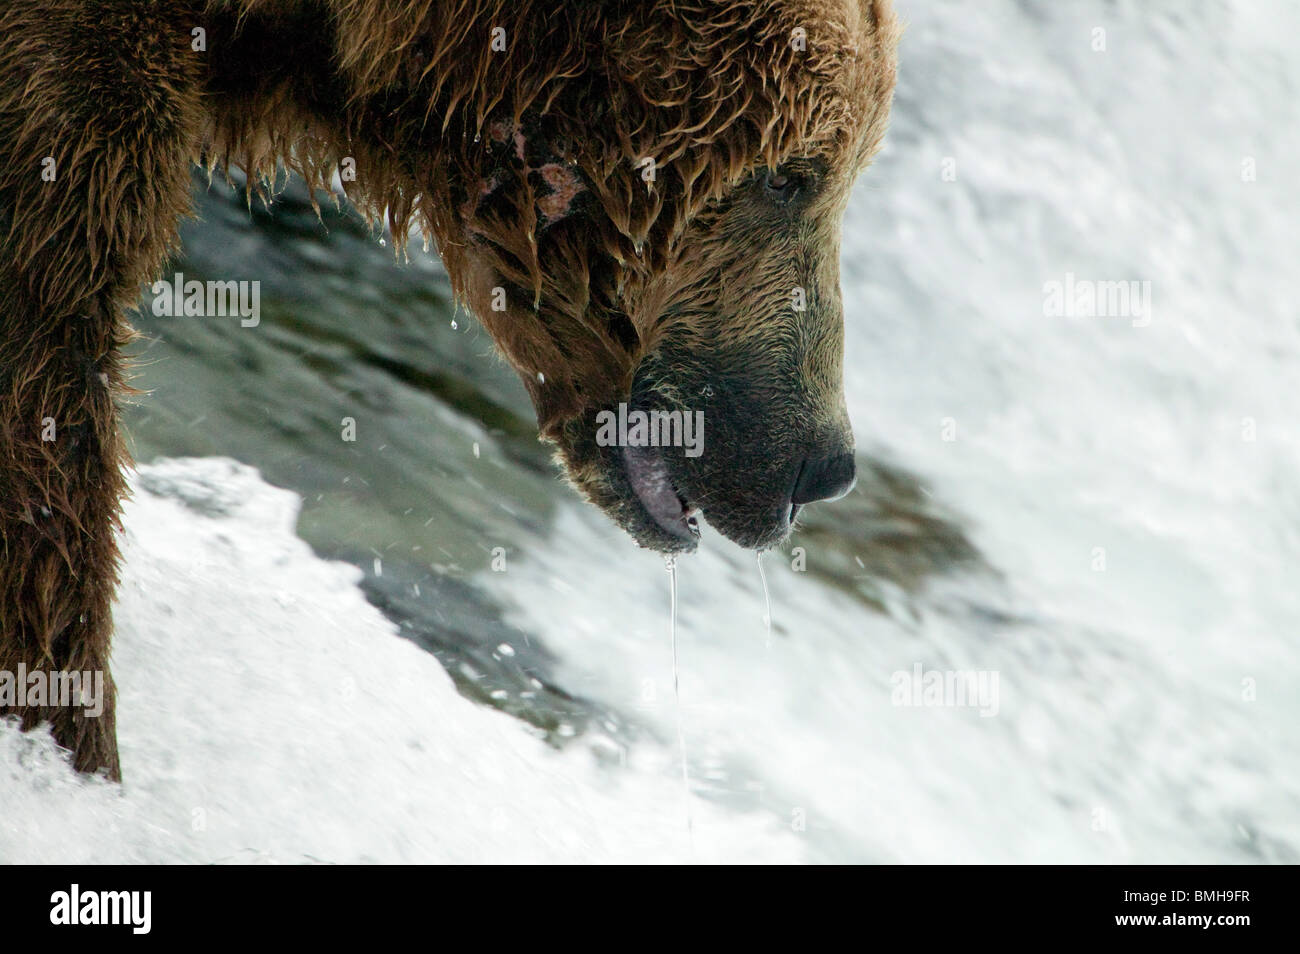 Brown bear, Brooks Falls, Katmai National Park, Alaska Stock Photo